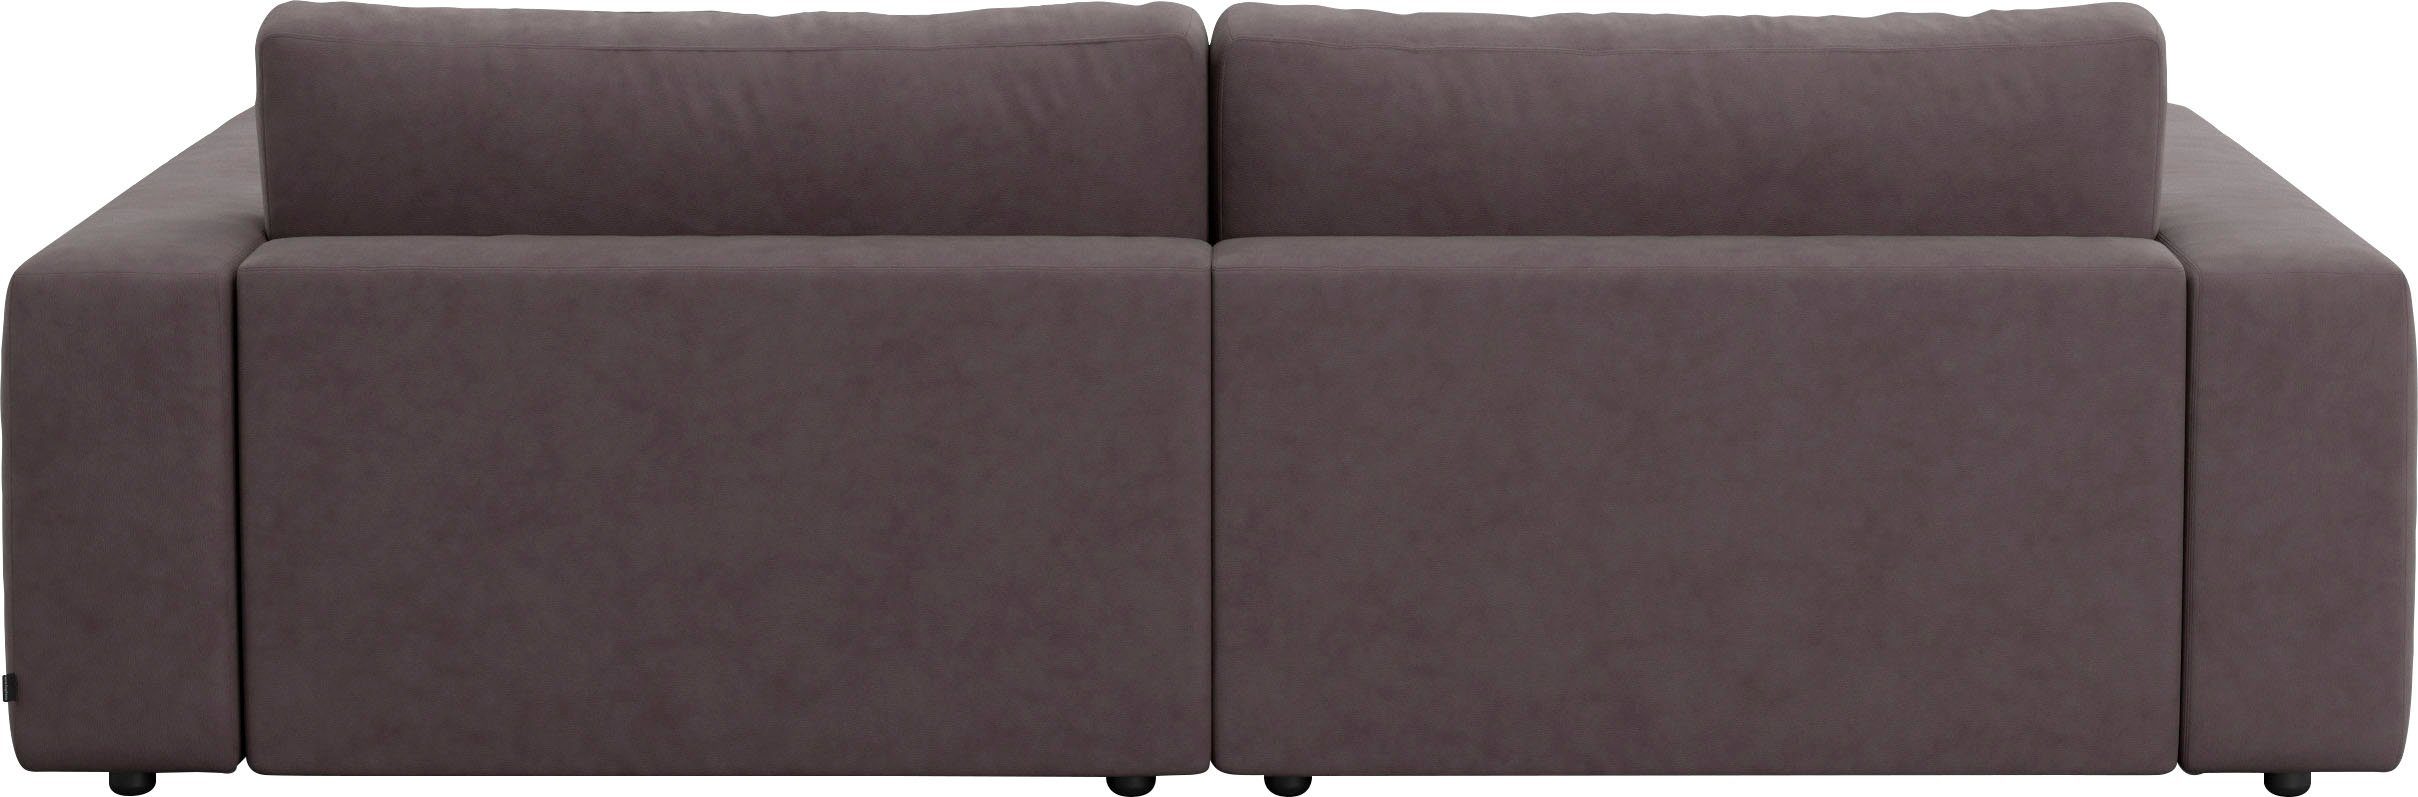 und in vielen Musterring GALLERY 4 unterschiedlichen by M Qualitäten 2,5-Sitzer Big-Sofa LUCIA, branded Nähten,